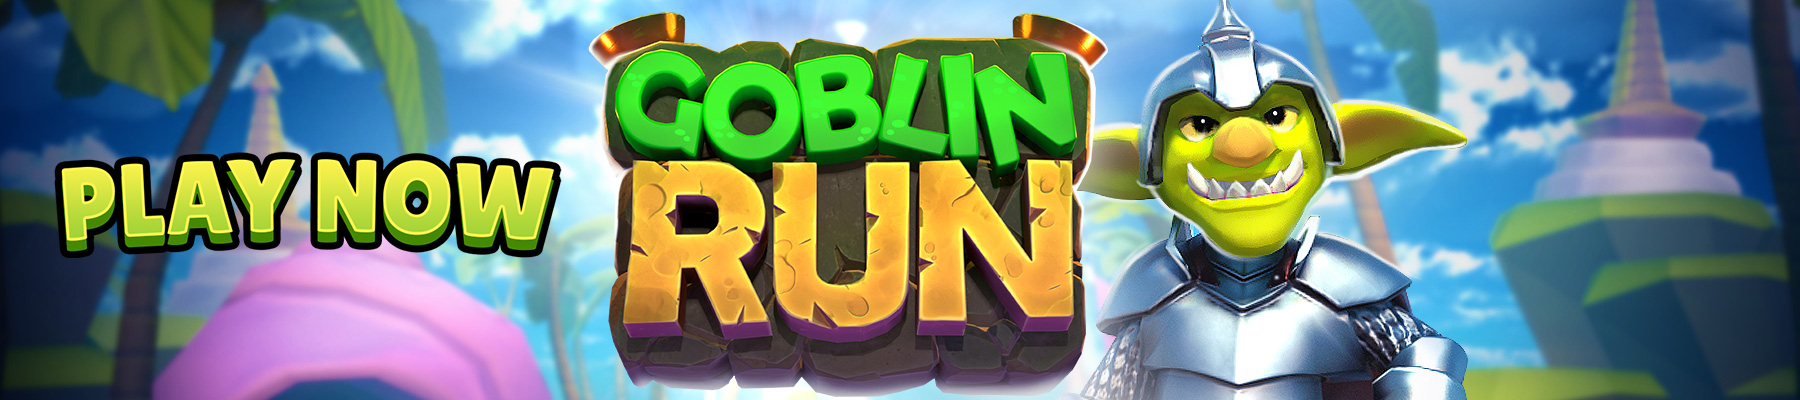 Pelaa Goblin Run nyt